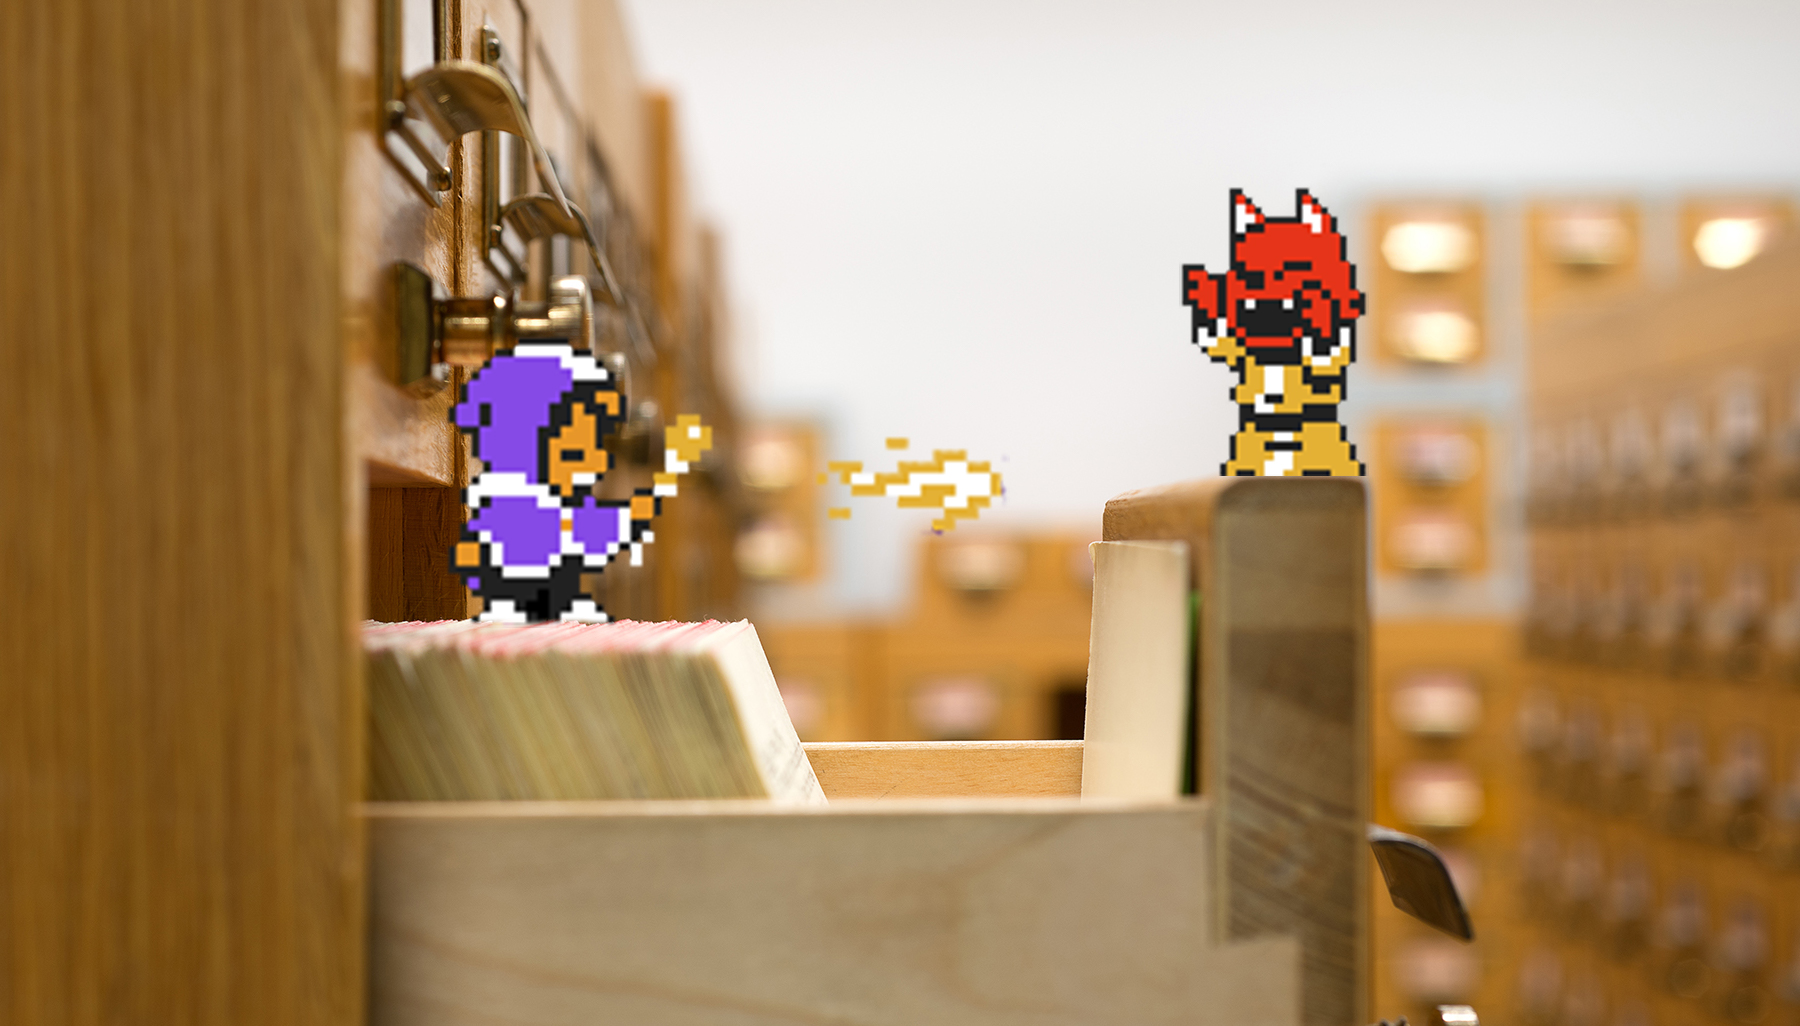 En datorspelsfigur med lila kappa skickar en eldboll mot ett rött monster. De står på arkivlådor.